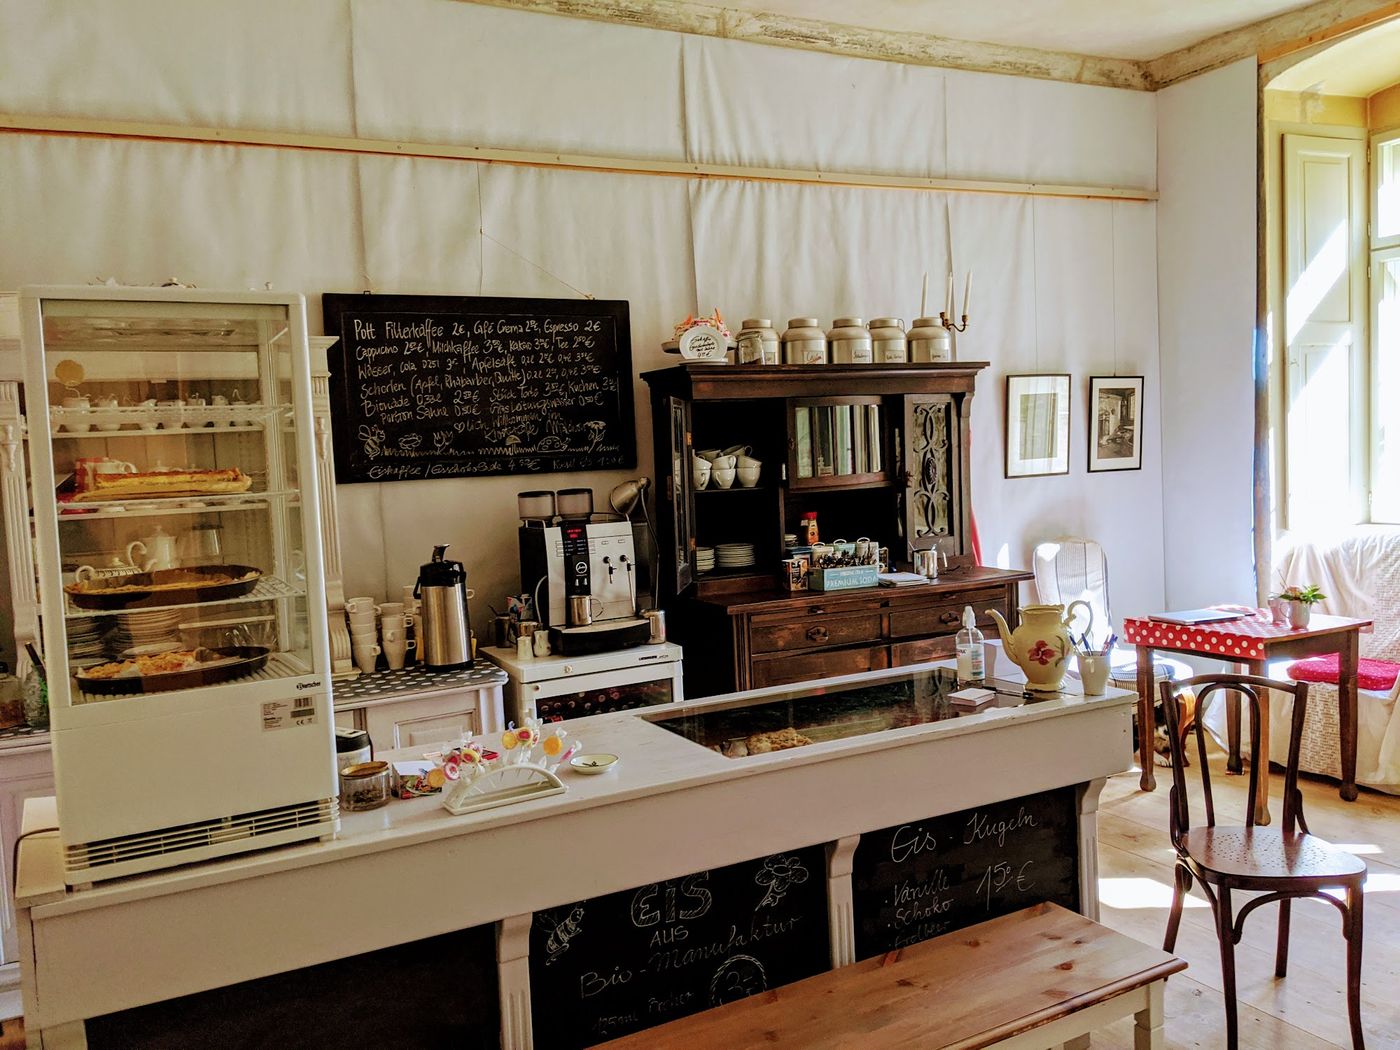 Gemütliches Café mit traumhaftem Innenhof und Kuchenkreationen